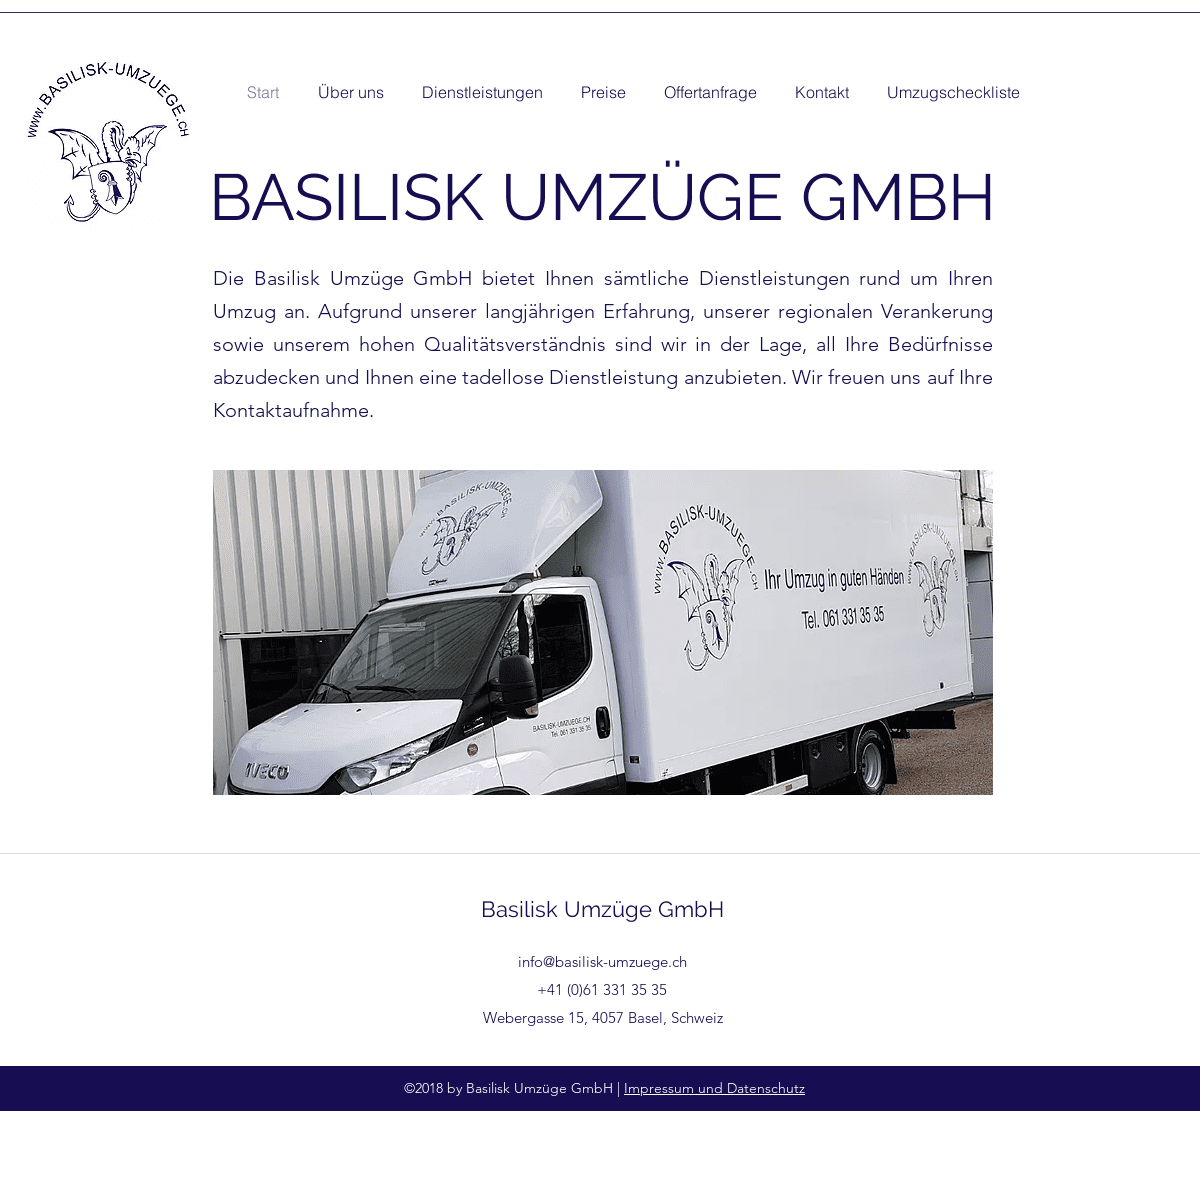 A complete backup of basilisk-umzuege.ch